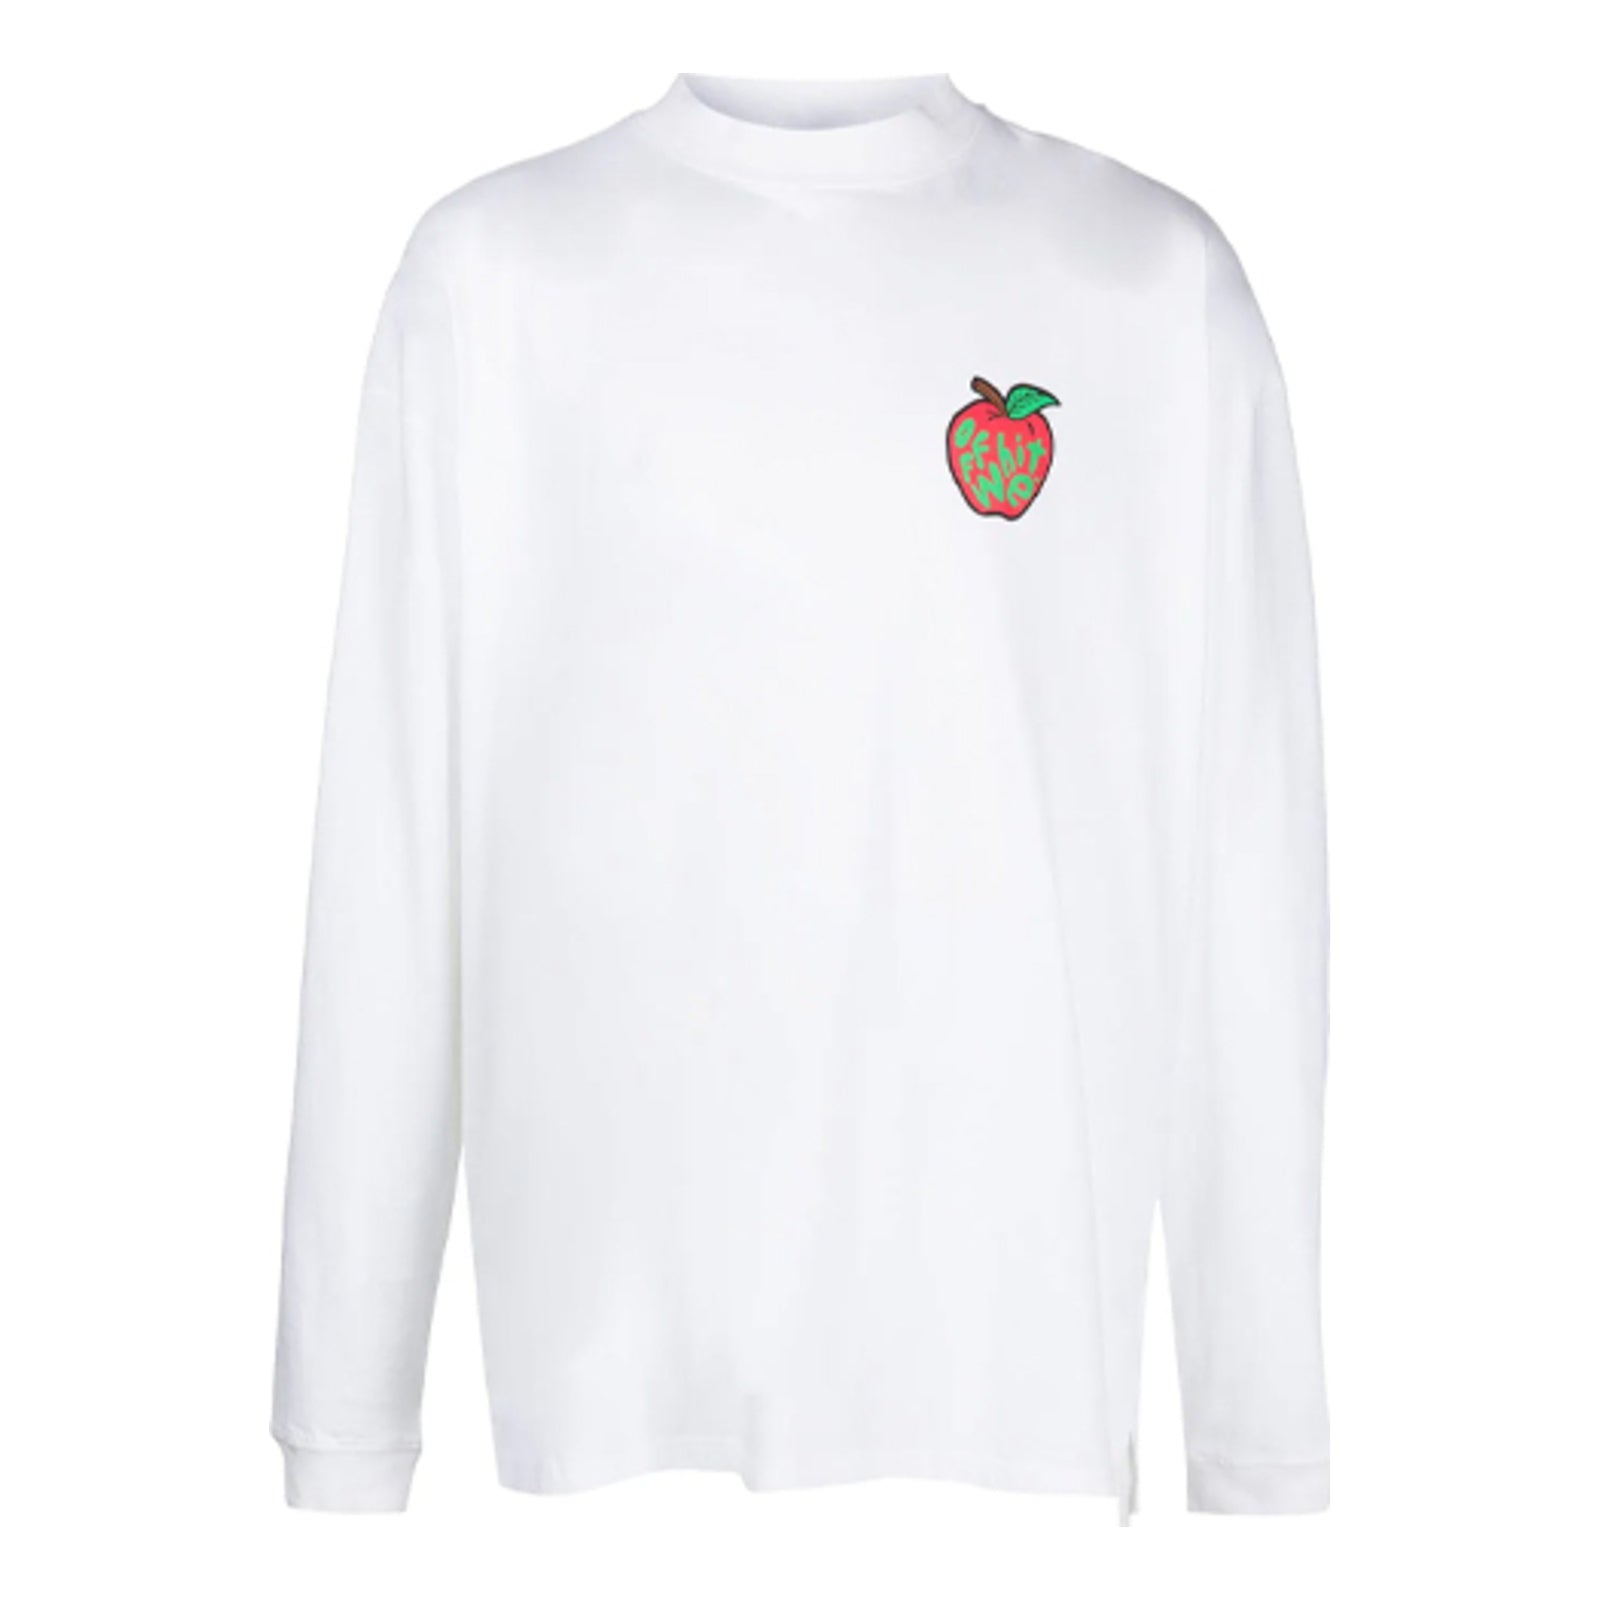 Louis Vuitton x NBA Basketball Short-Sleeved T-shirt White Men's - SS21 - US